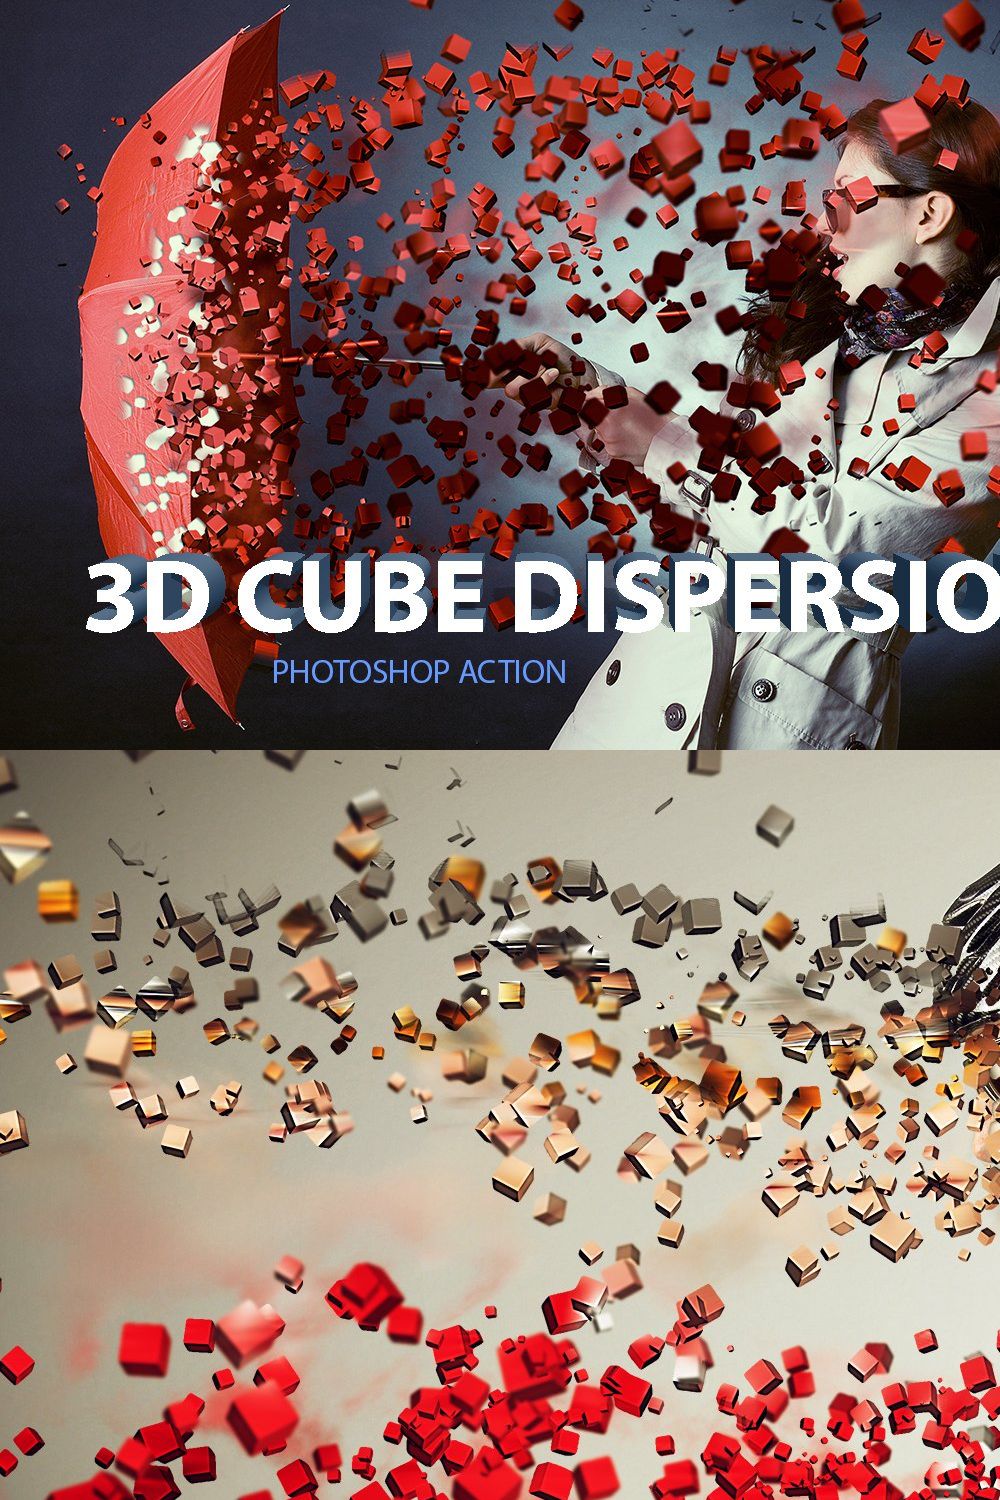 3D Cube Dispersion pinterest preview image.